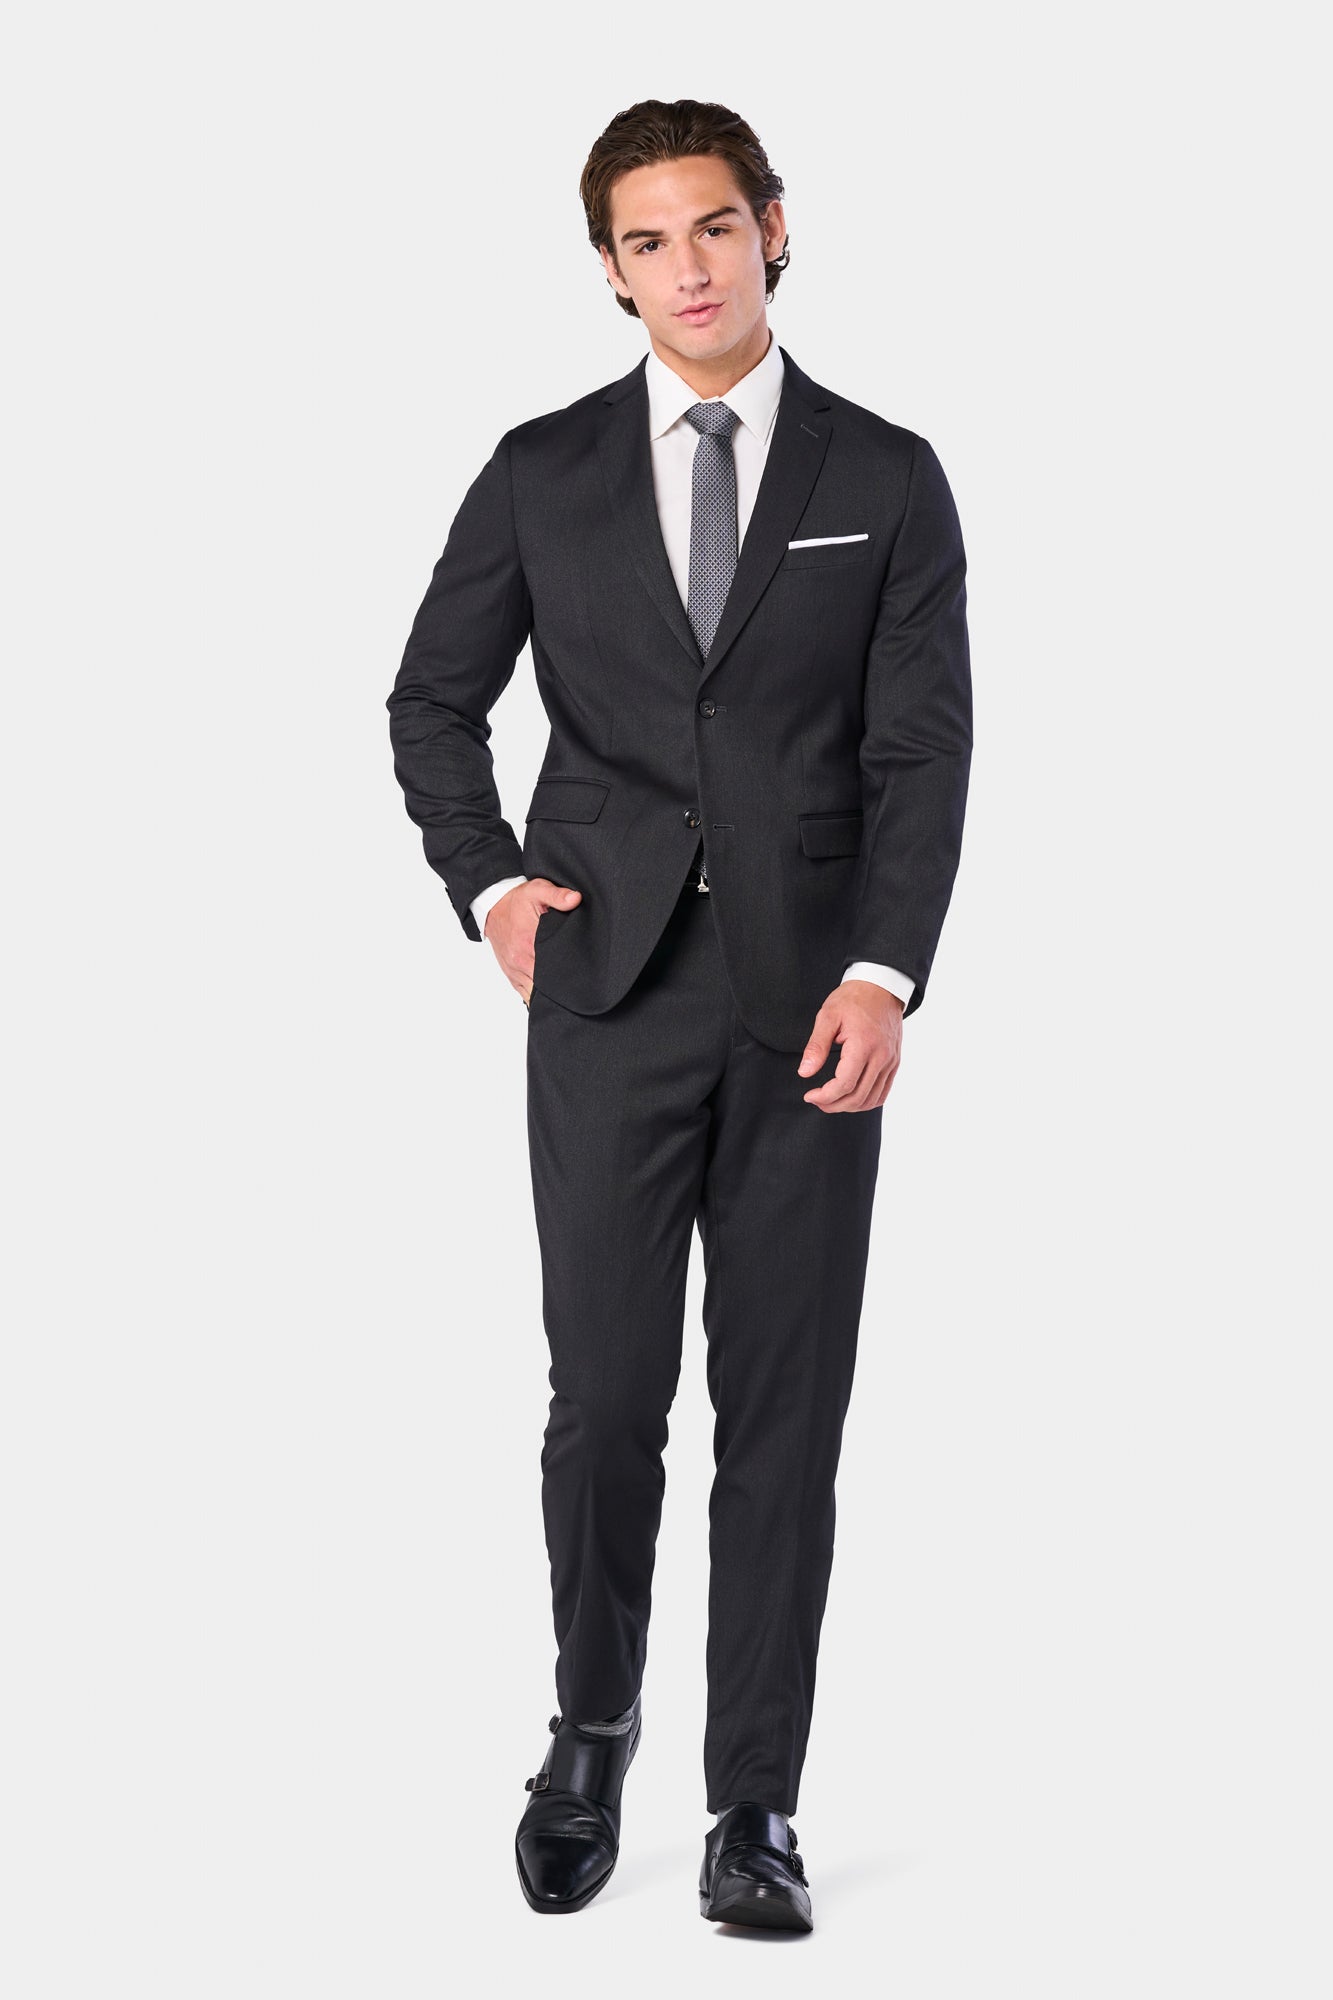 HolloMen's Men's Black Detailed Suit: Captivating Aura that Redefines  Dapper Charm.